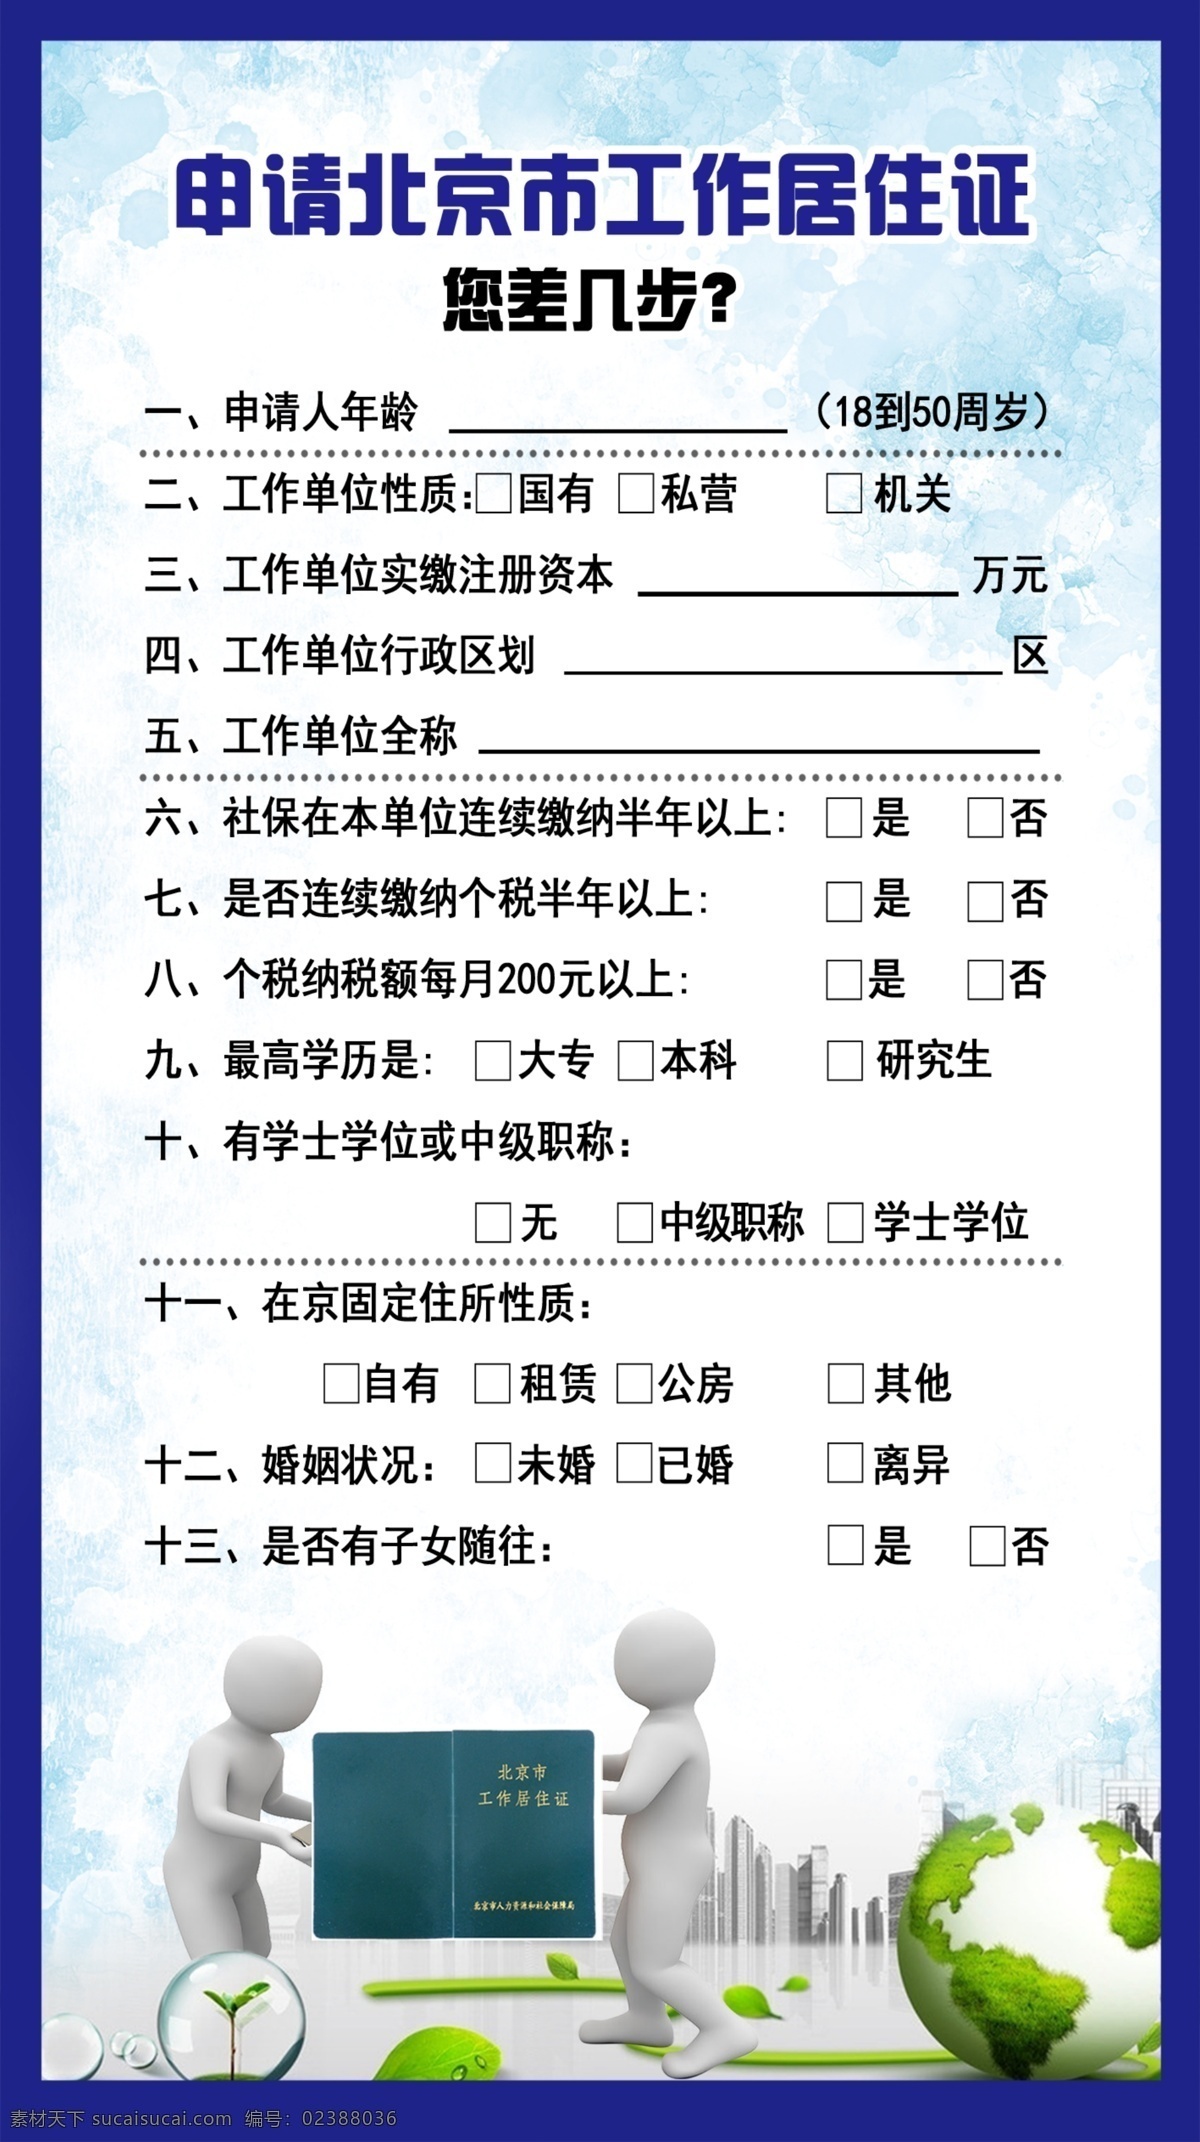 工作居住证 ps素材 申请 北京市 工作 居住证 申请人 工作单位